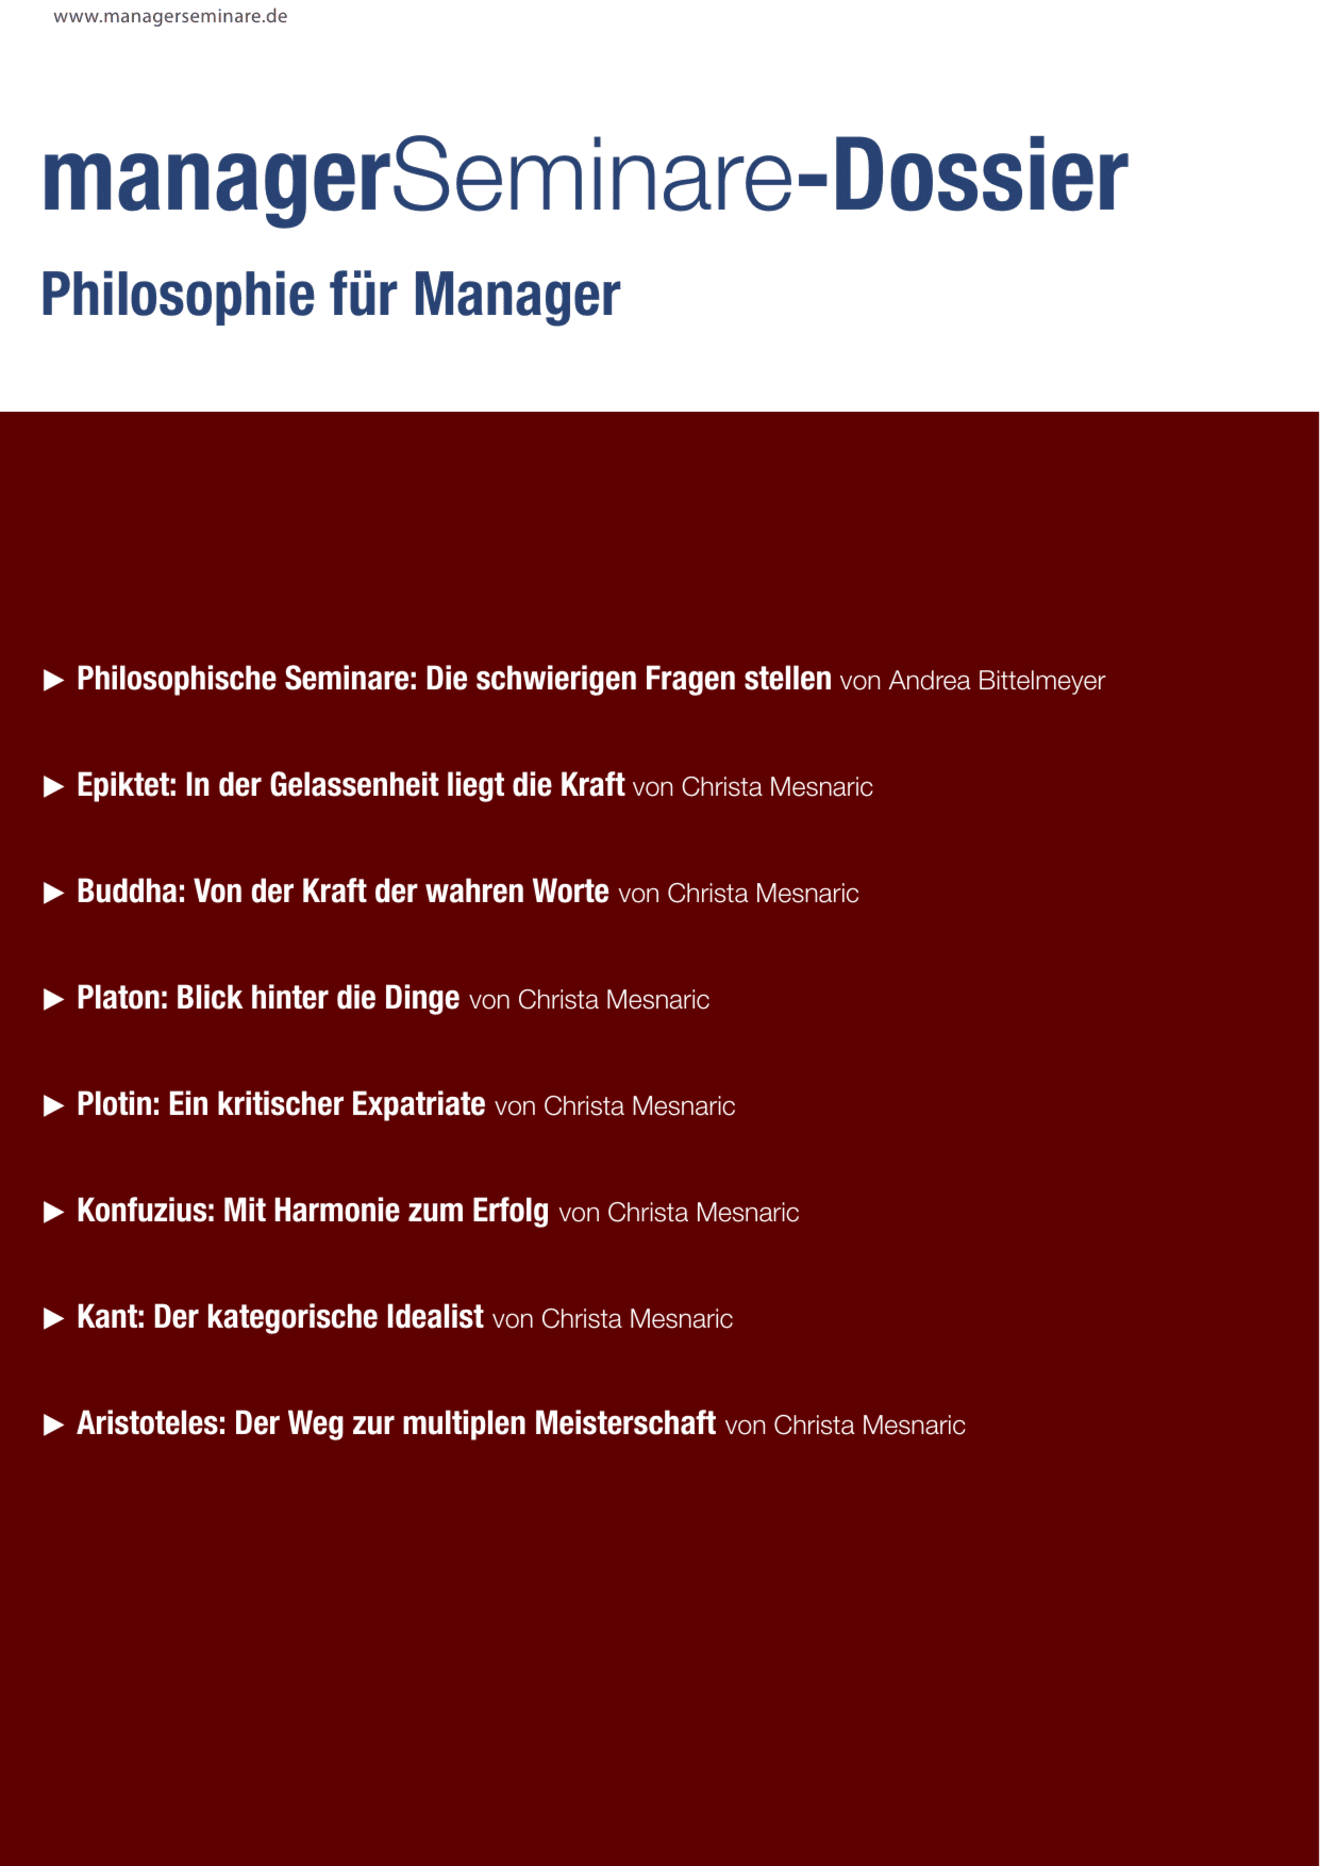 zum Dossier: Philosophie für Manager, Teil 1